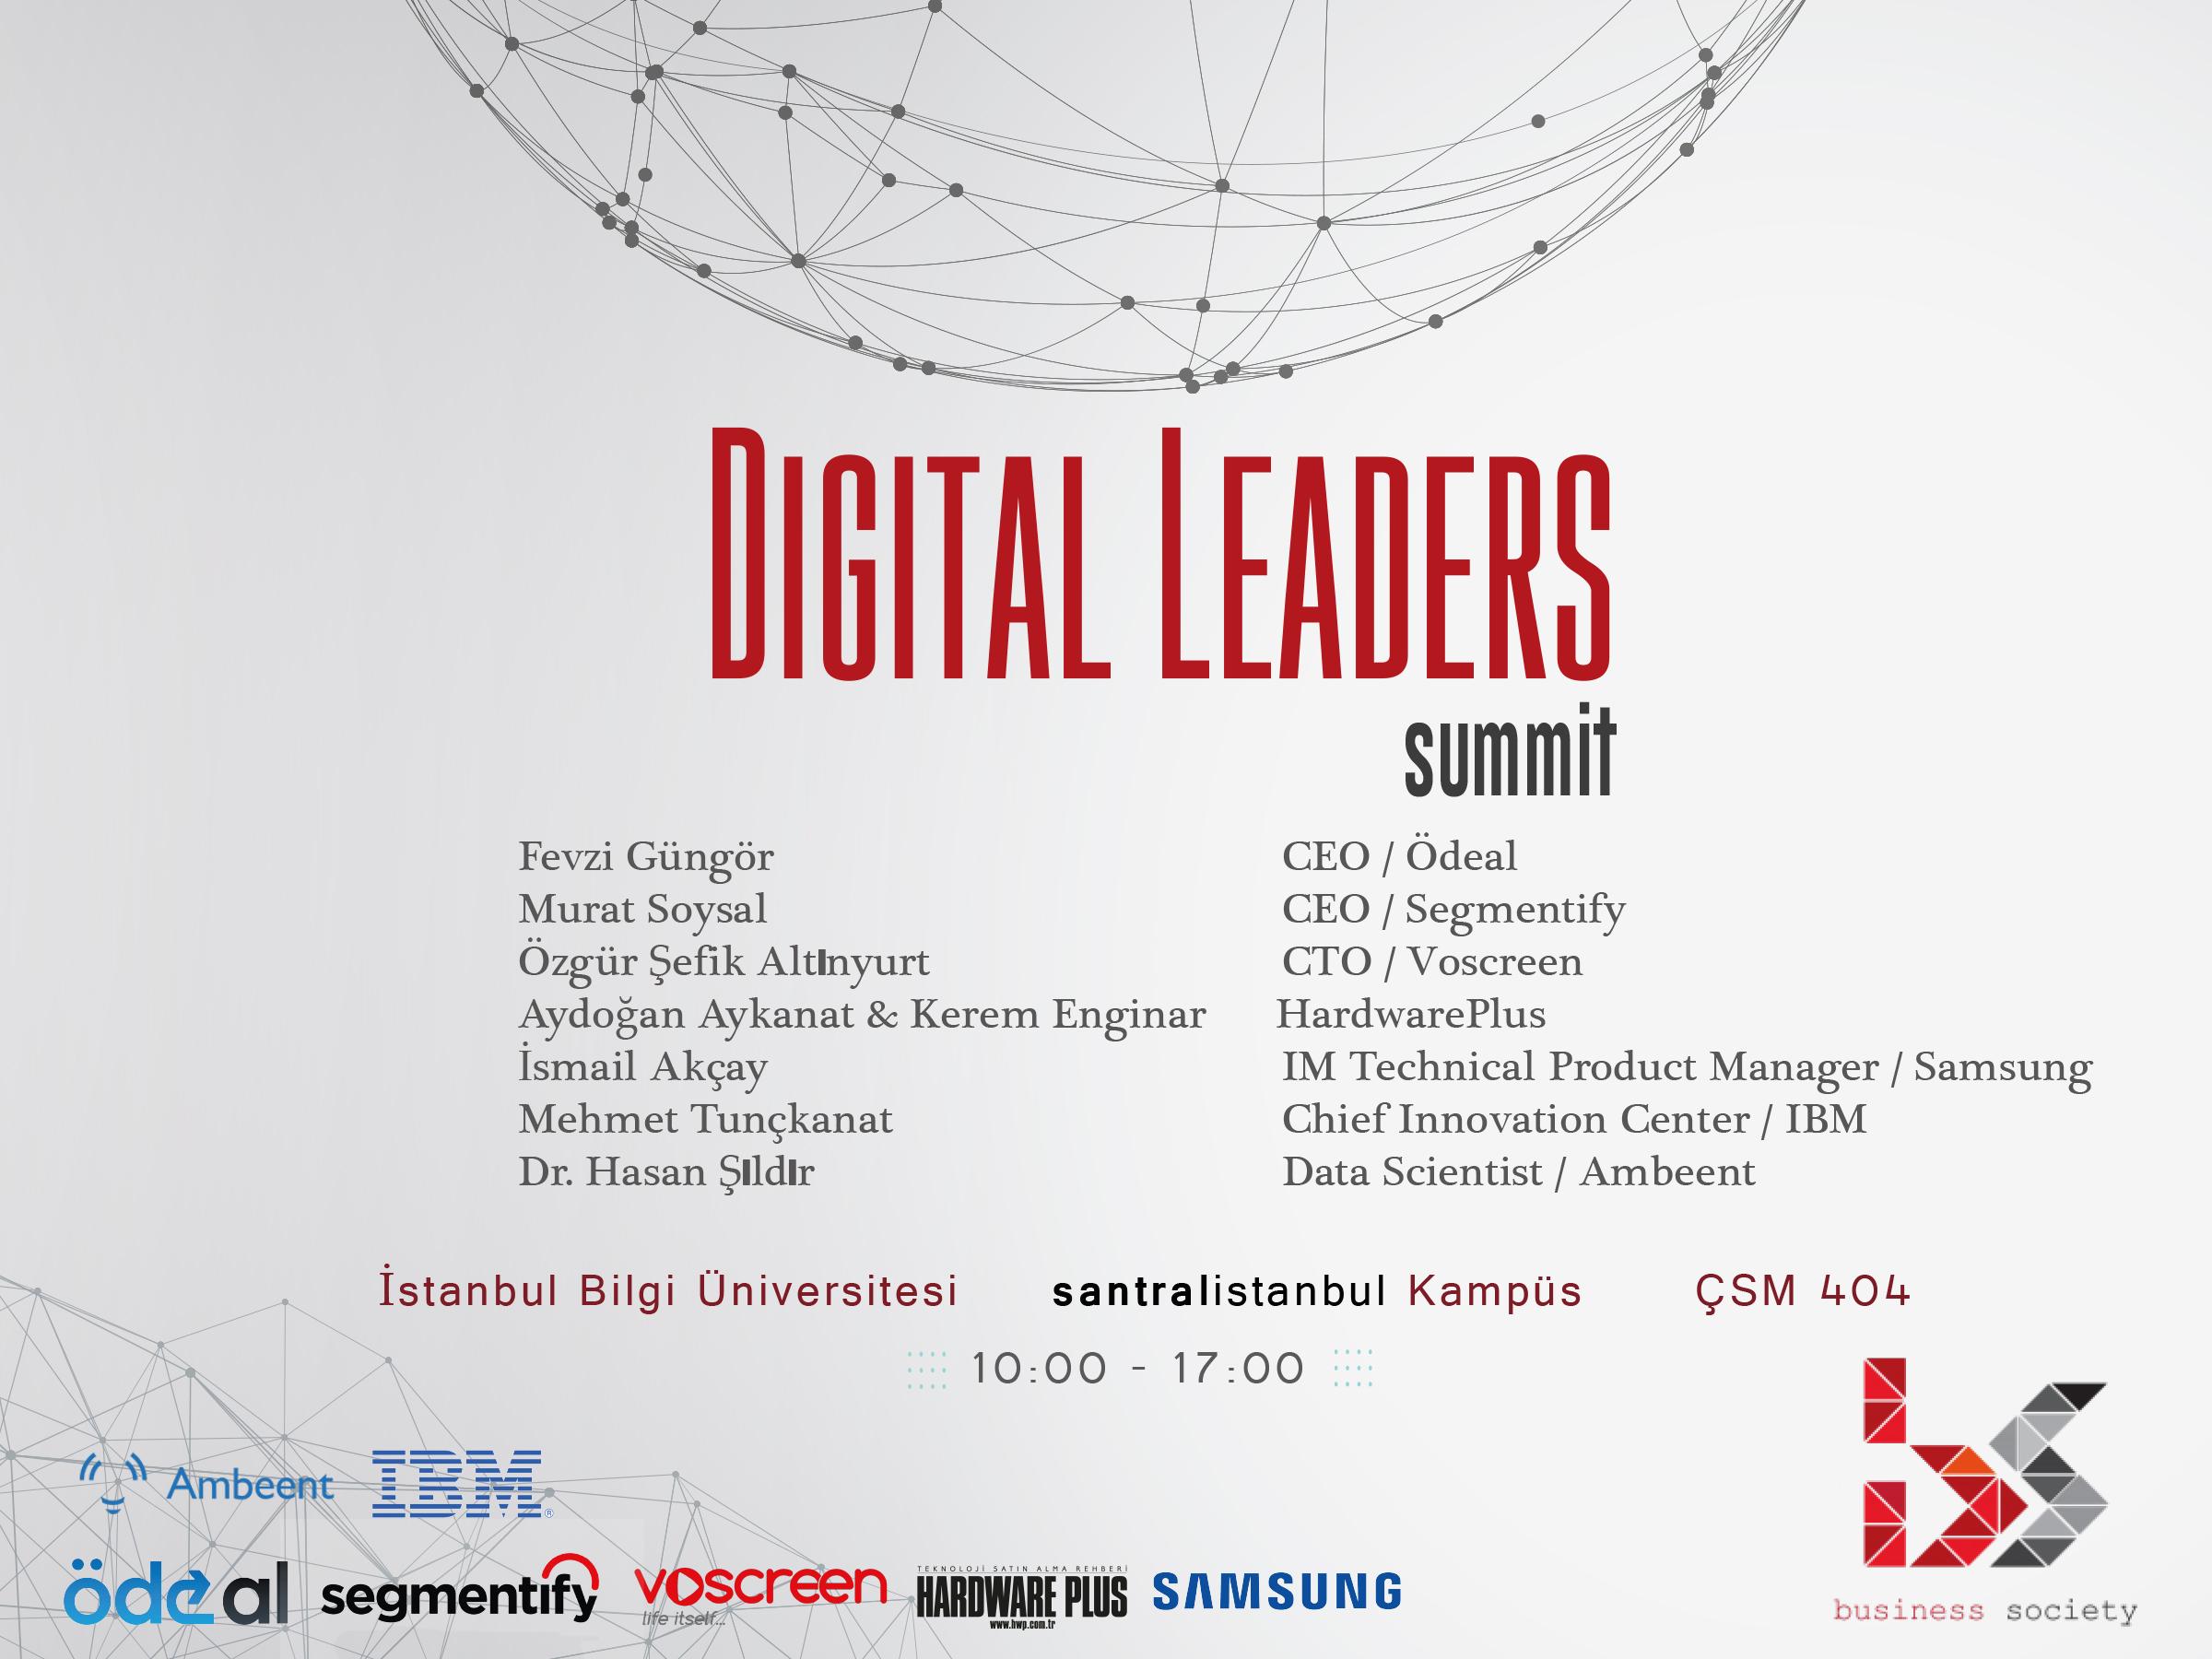 Digital Leaders Summit